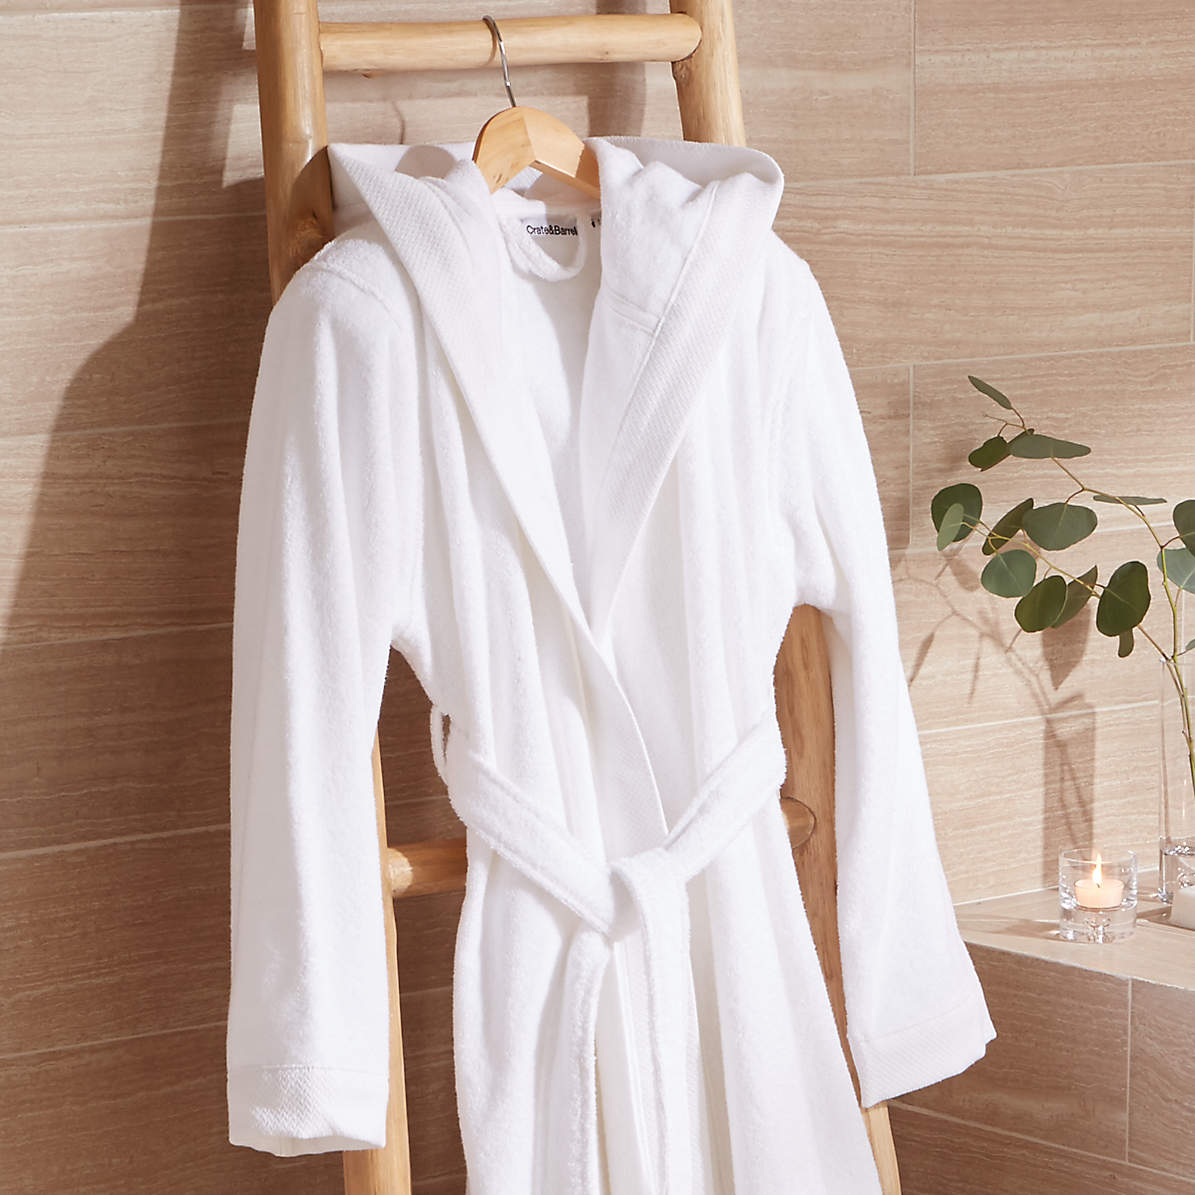 https://cb.scene7.com/is/image/Crate/TurkishCttn500grRobeWhtSMSHS19/$web_pdp_main_carousel_zoom_med$/190411135522/white-turkish-bath-robe.jpg